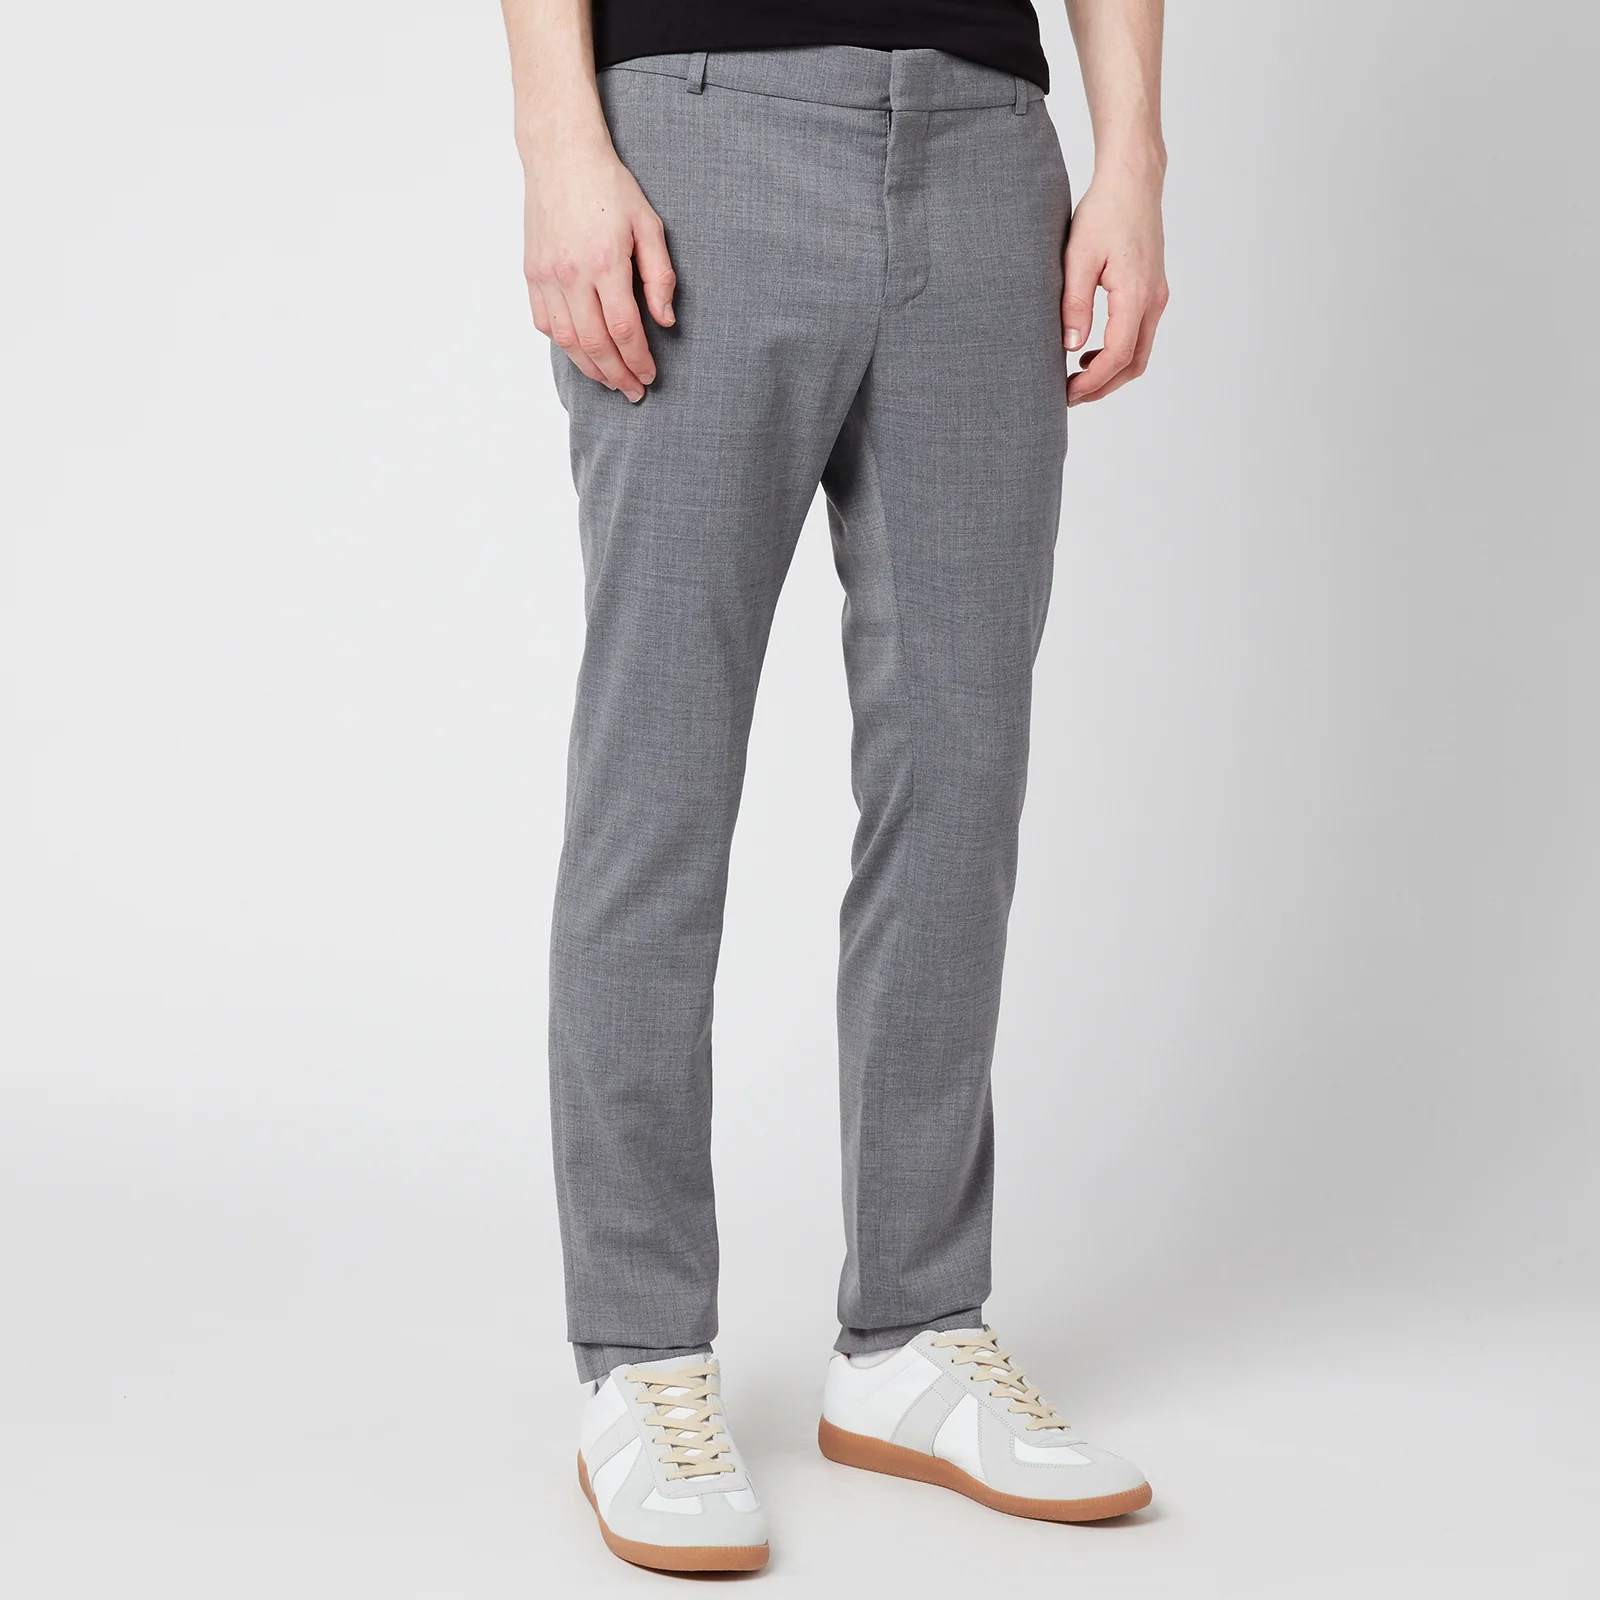 Balmain Men's Slim Wool Trousers - Grey Image 1